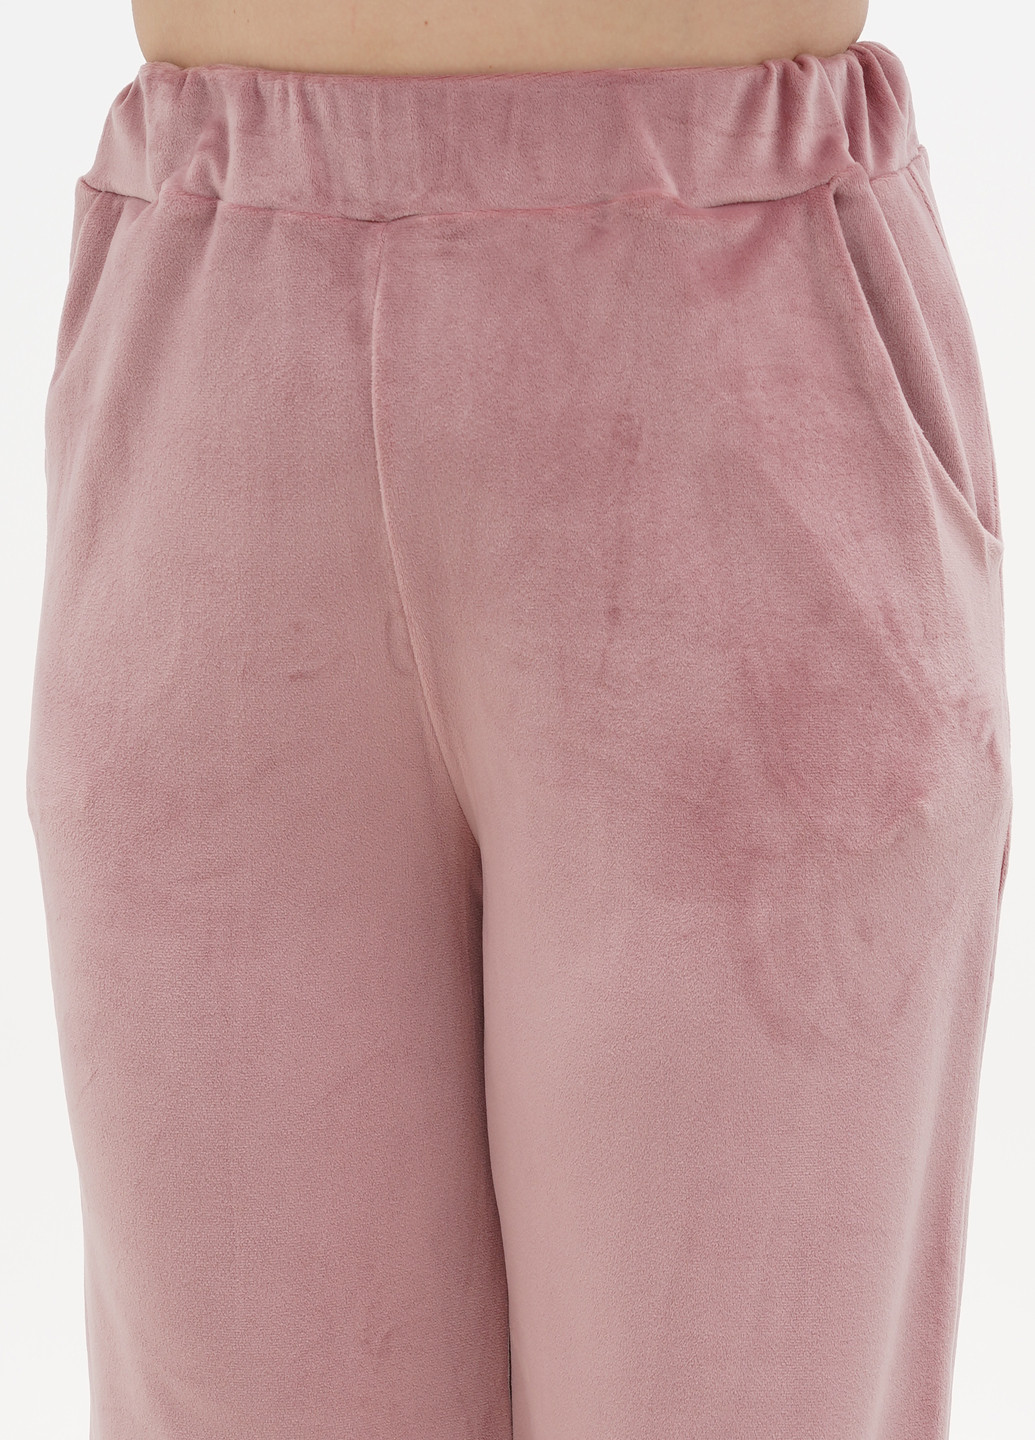 Розовый демисезонный комплект (футболка, брюки) Fleri